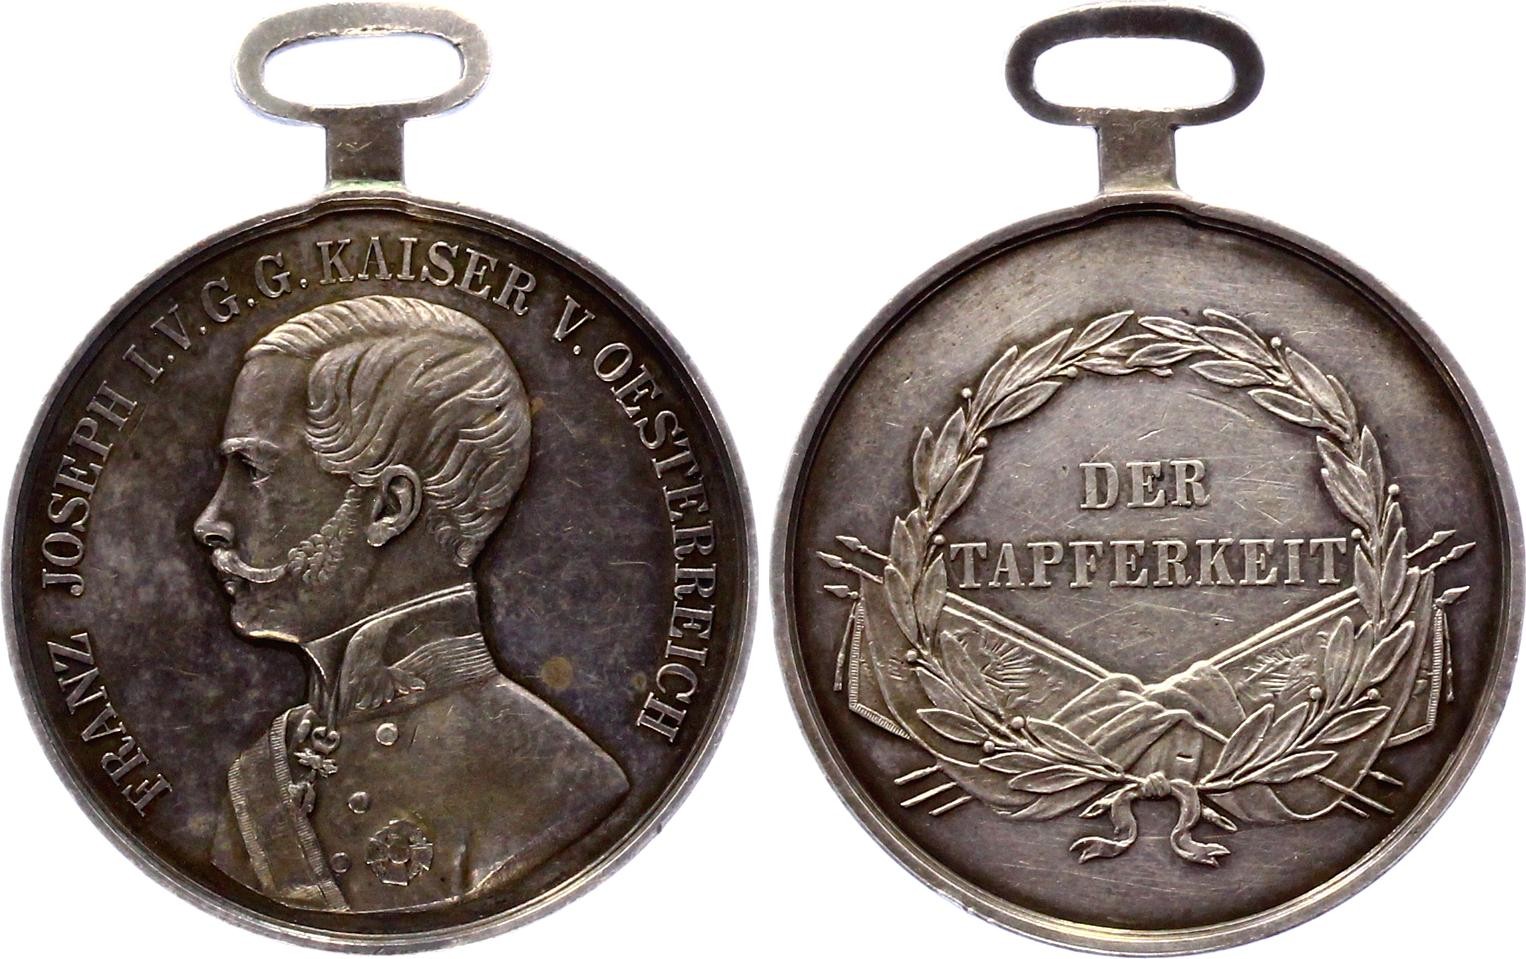 Autriche - Tapferkeitsmedaille 1 Klass «FORTITVDINI» - Médaille, Récompense,  Médaille d'argent de la bravoure austro-hongroise, 1re classe - 1917 -  Catawiki